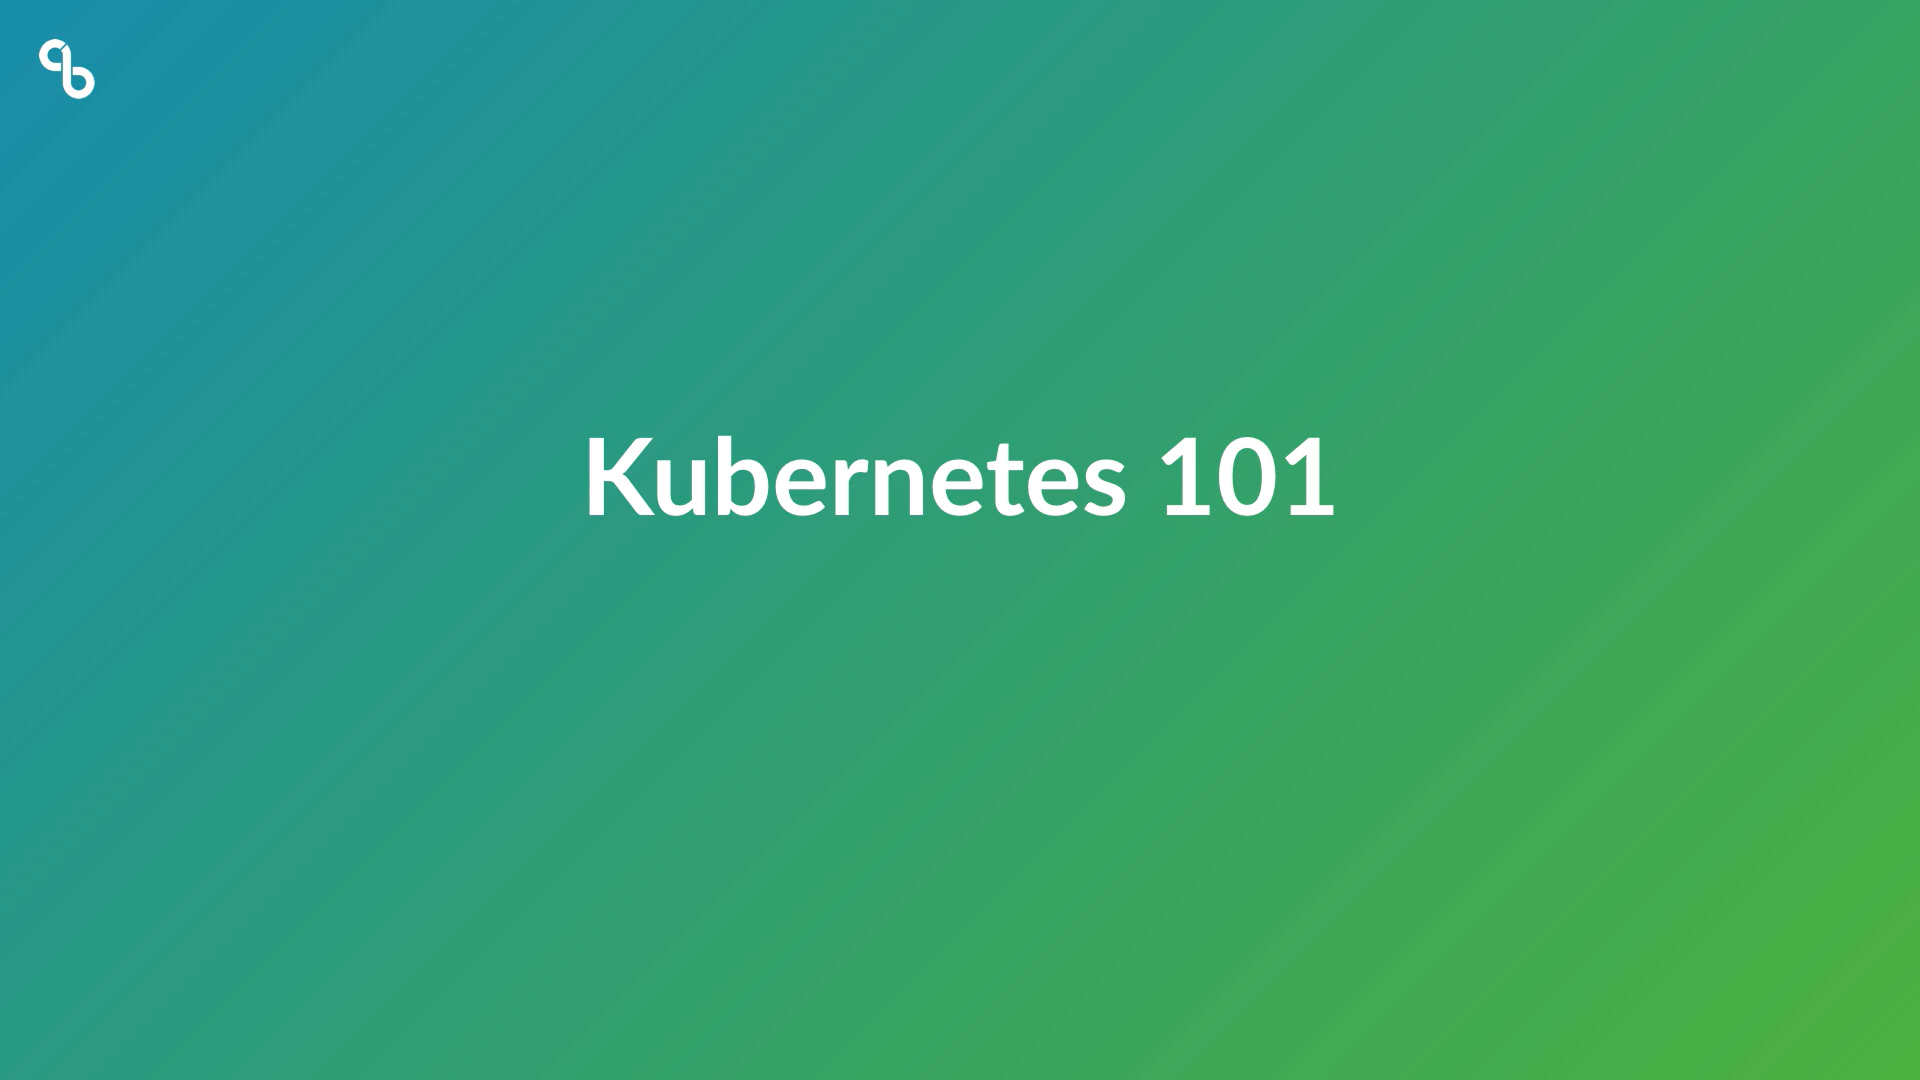 kubernetes 101 featured image